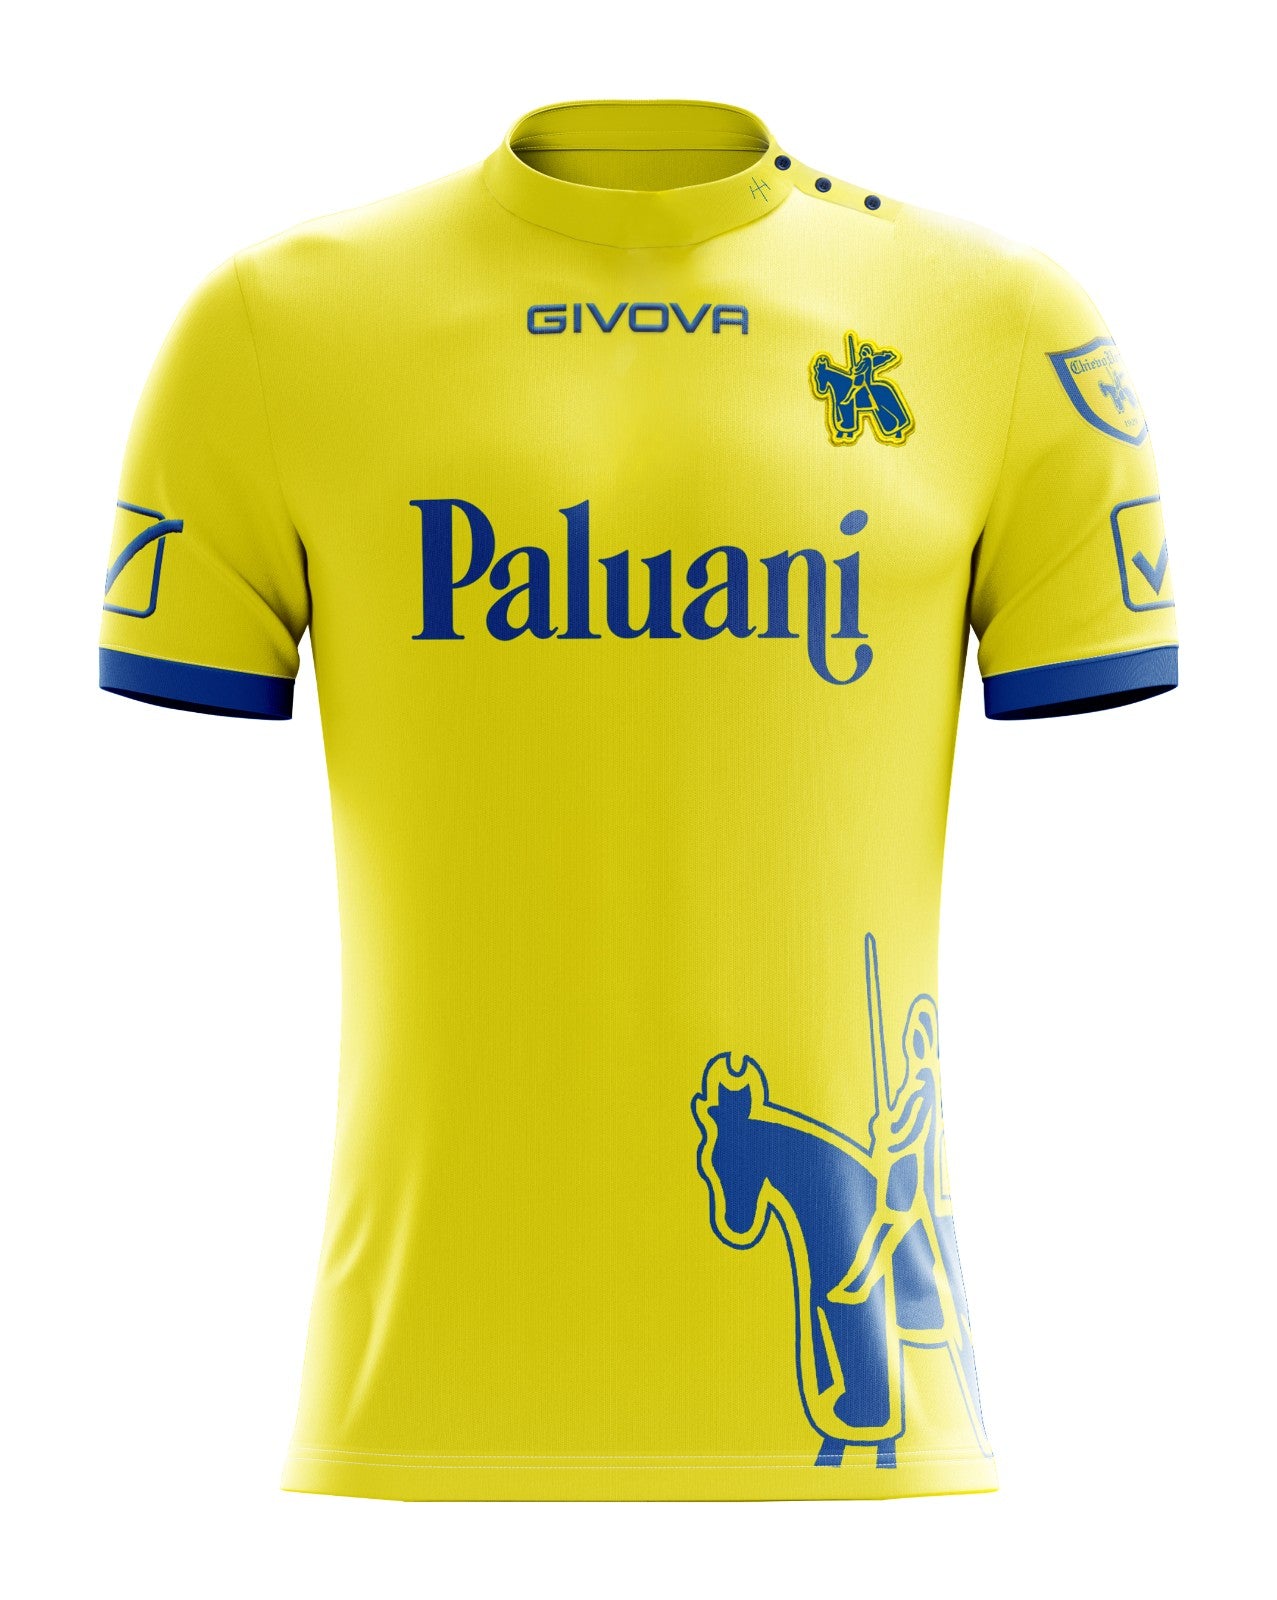 Cult Kits | Buy Chievo Verona Shirts | Classic Football Kits